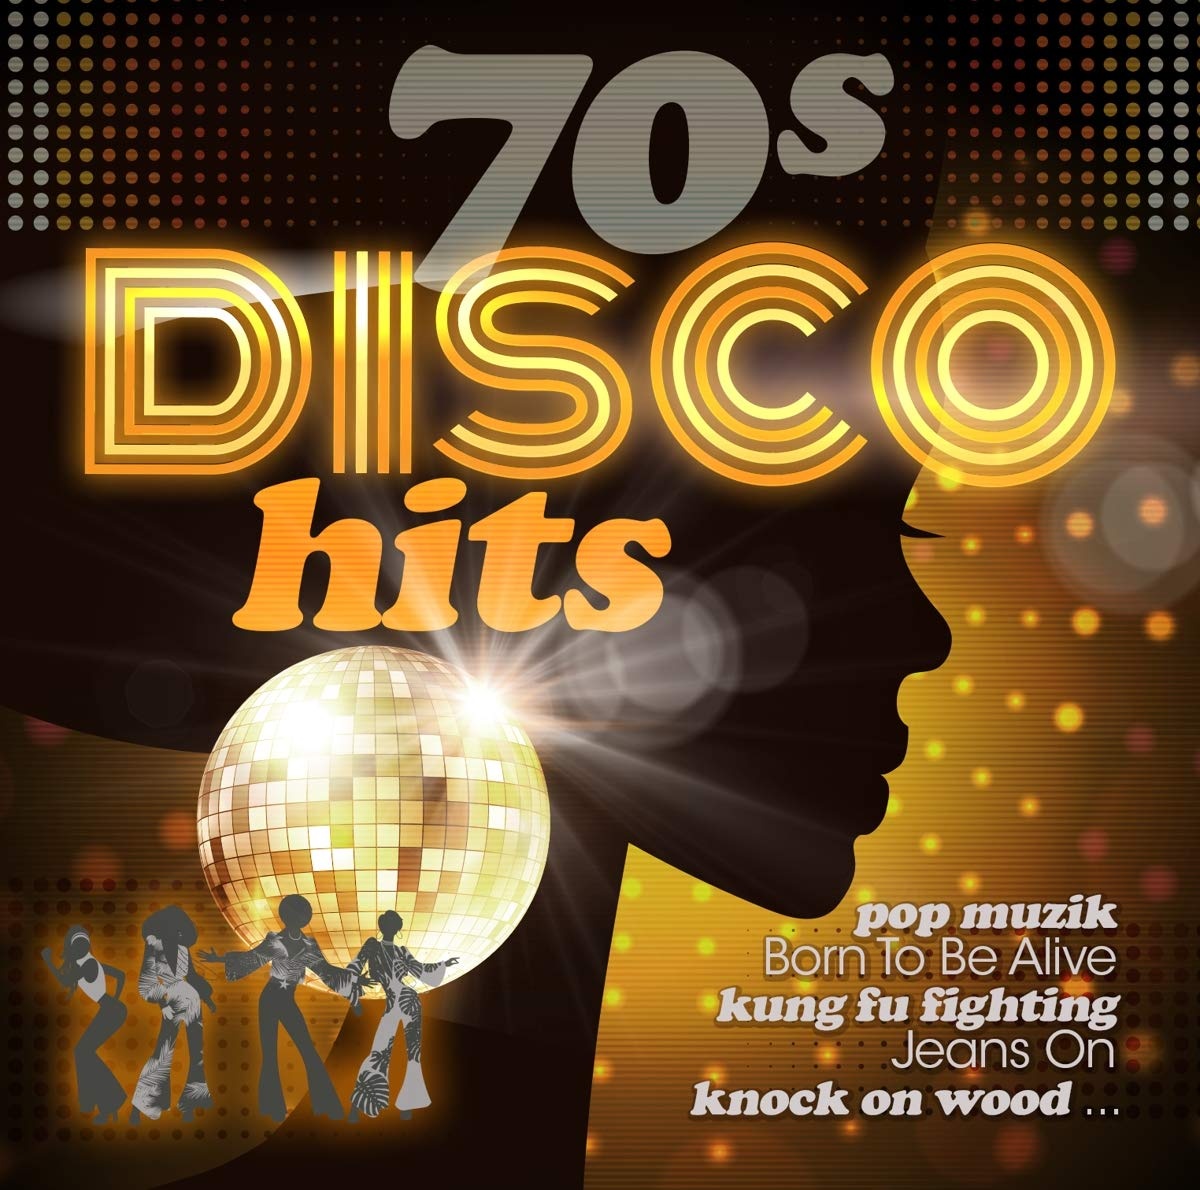 New disco hits. Диско хиты. Disco 70s. Disco Hits. Disco 70's обложки.